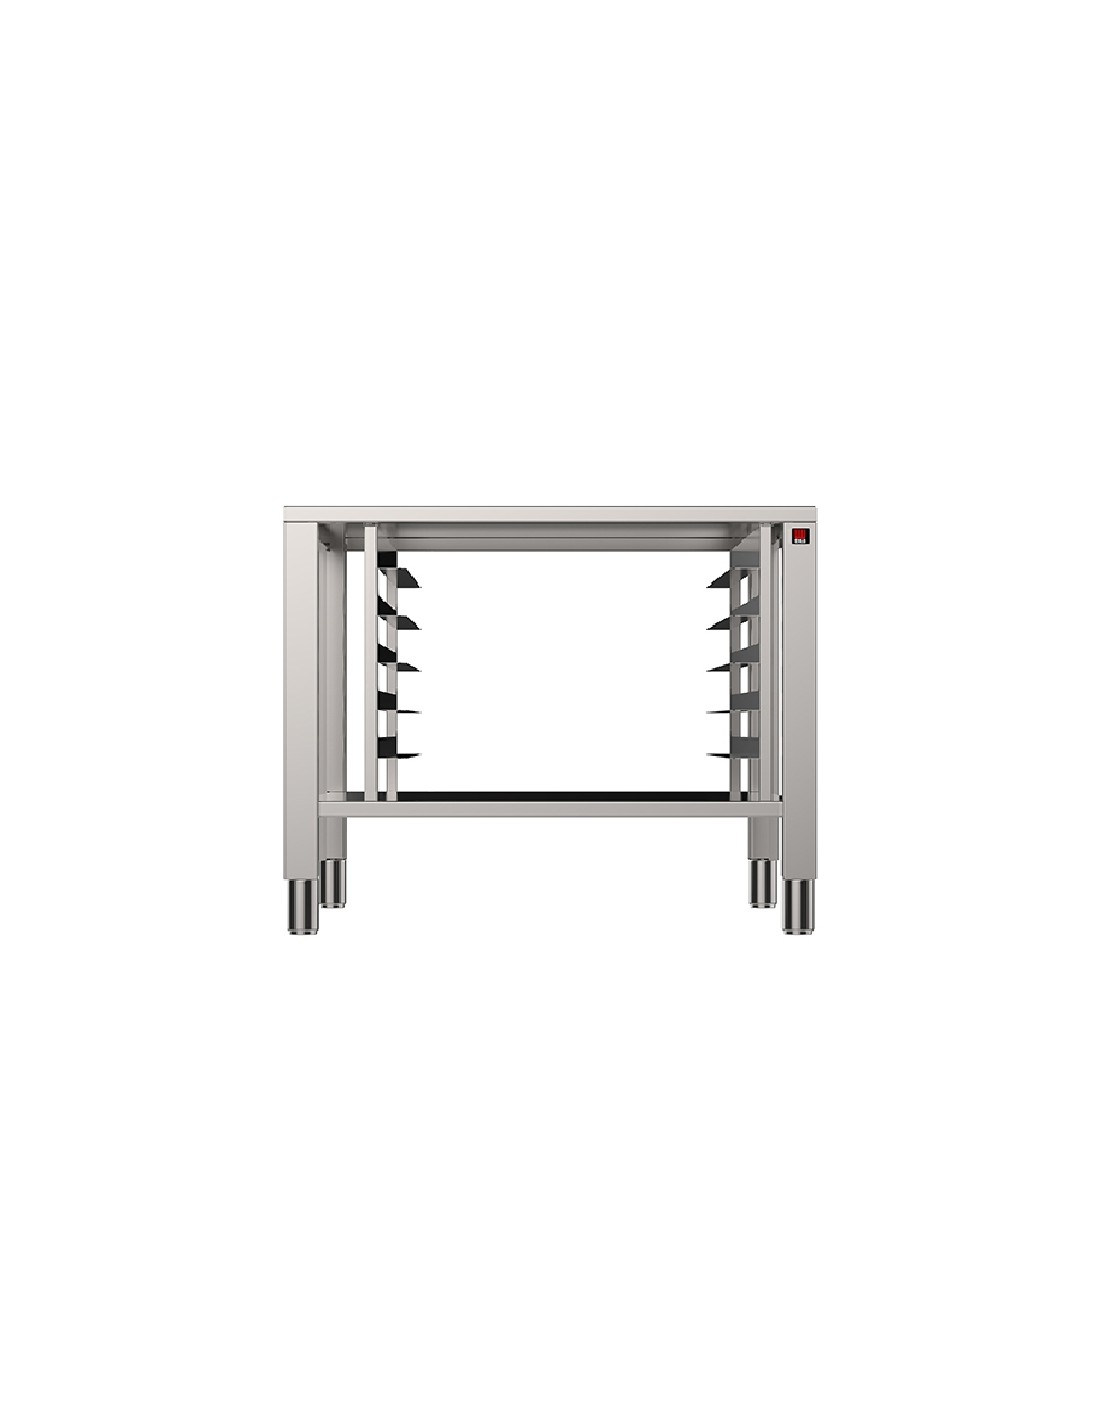 Tavolo fisso - Acciaio inox AISI 430 - Per forni 6/10 teglie GN 2/1 - Dimensioni cm 85 x 78.7 x77h